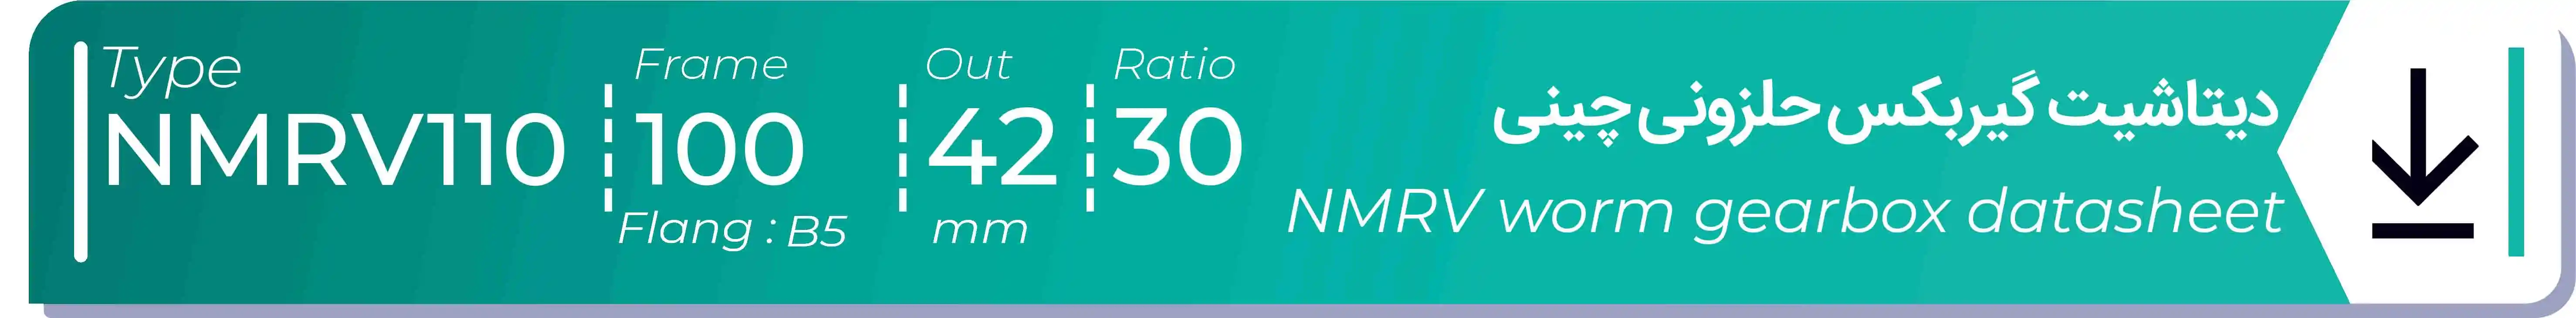  دیتاشیت و مشخصات فنی گیربکس حلزونی چینی   NMRV110  -  با خروجی 42- میلی متر و نسبت30 و فریم 100